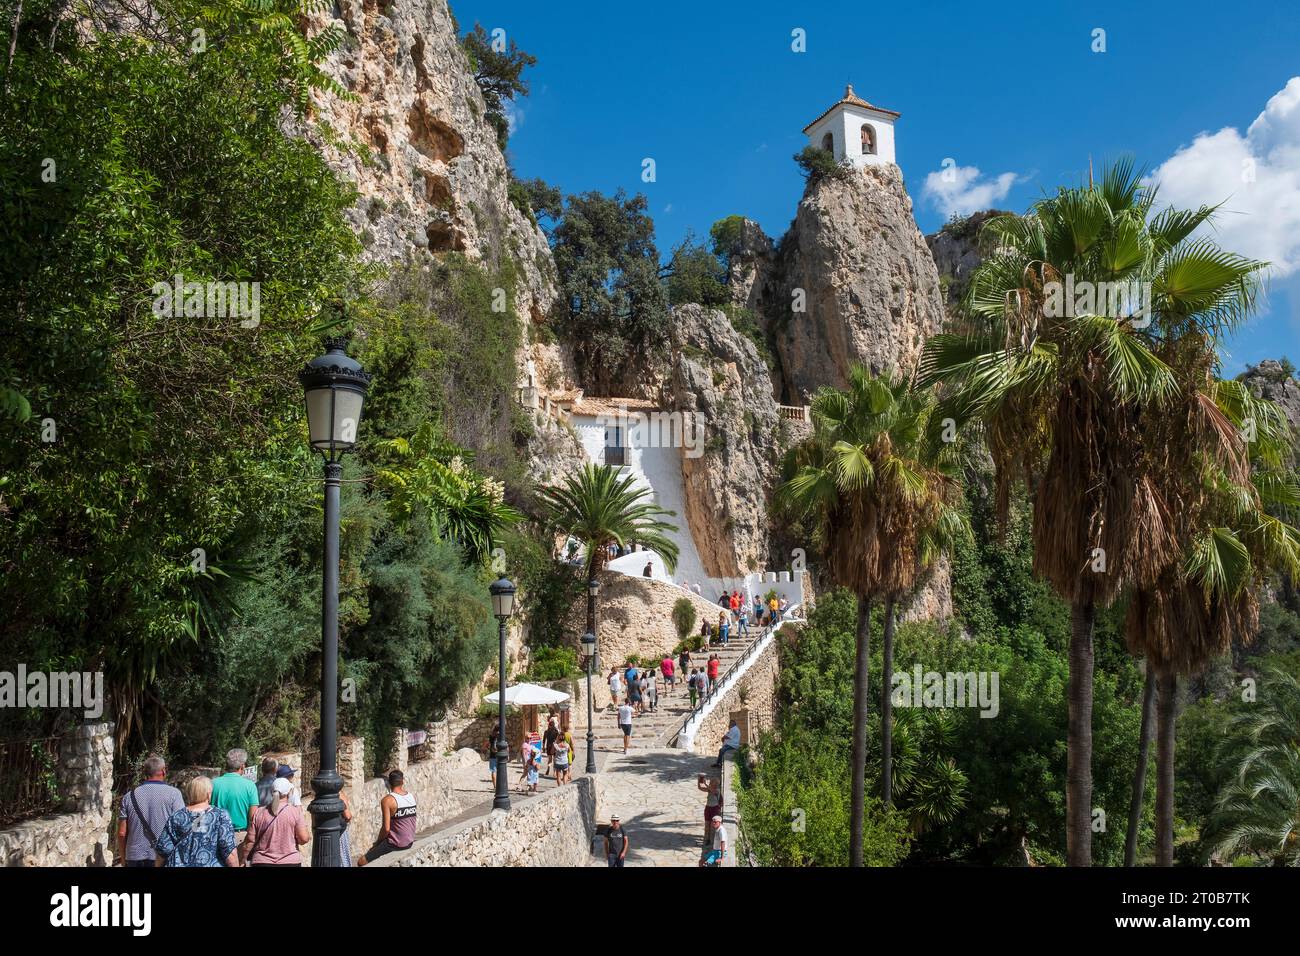 El pueblo de El Castell de Guadalest es considerado el pueblo más visitado de la provincia española de Alicante Foto de stock